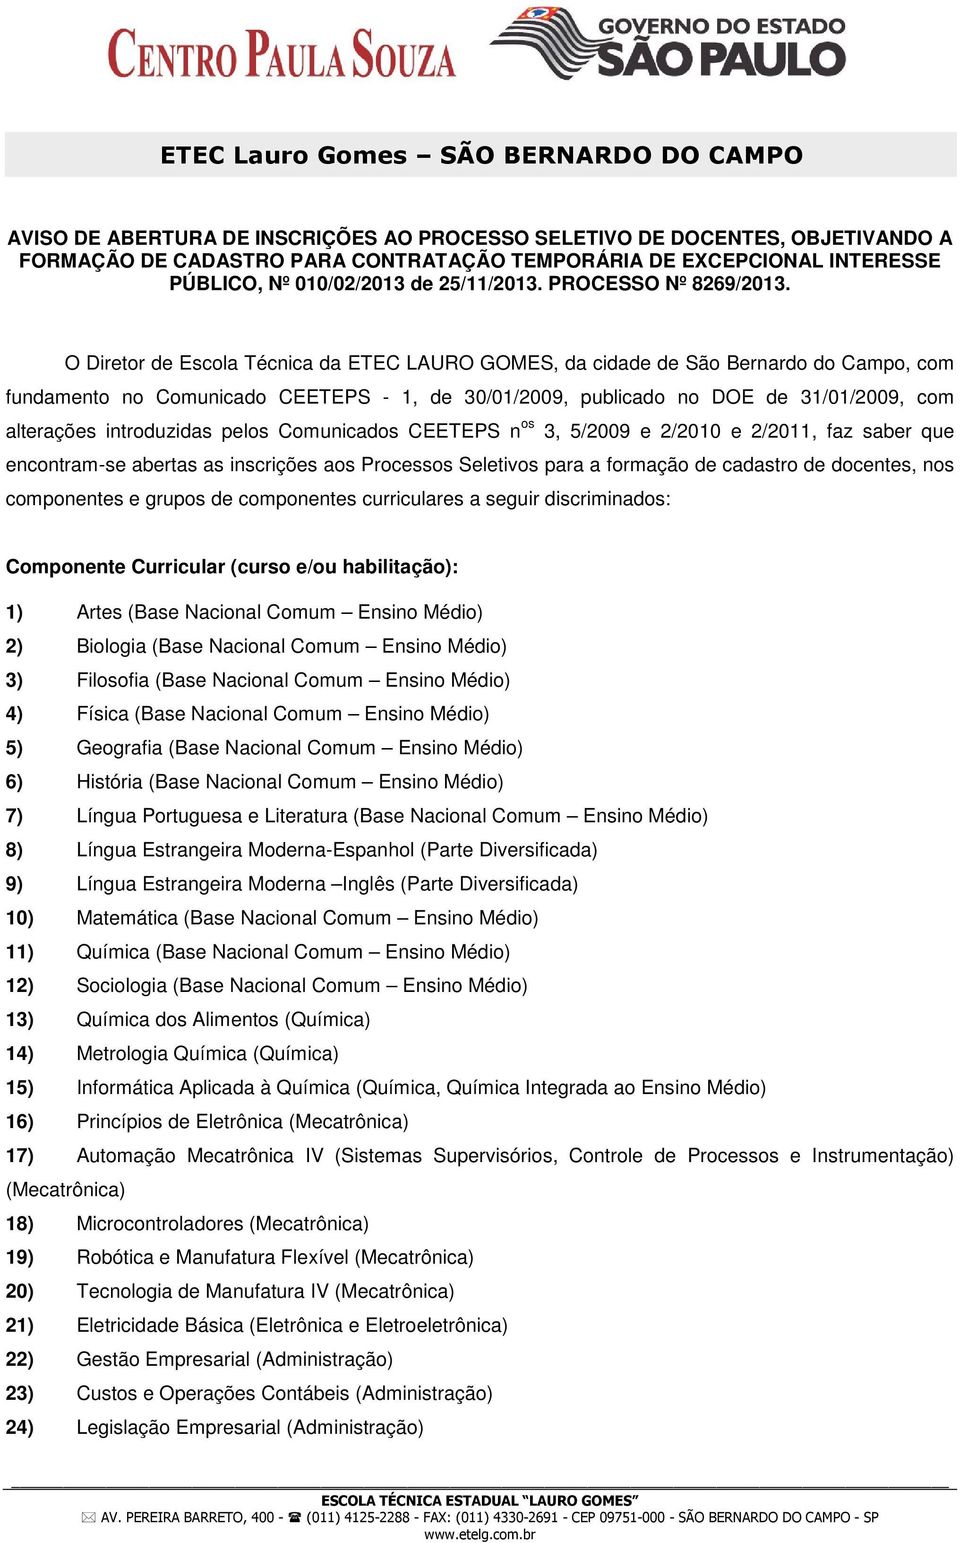 O Diretor de Escola Técnica da ETEC LAURO GOMES, da cidade de São Bernardo do Campo, com fundamento no Comunicado CEETEPS - 1, de 30/01/2009, publicado no DOE de 31/01/2009, com alterações